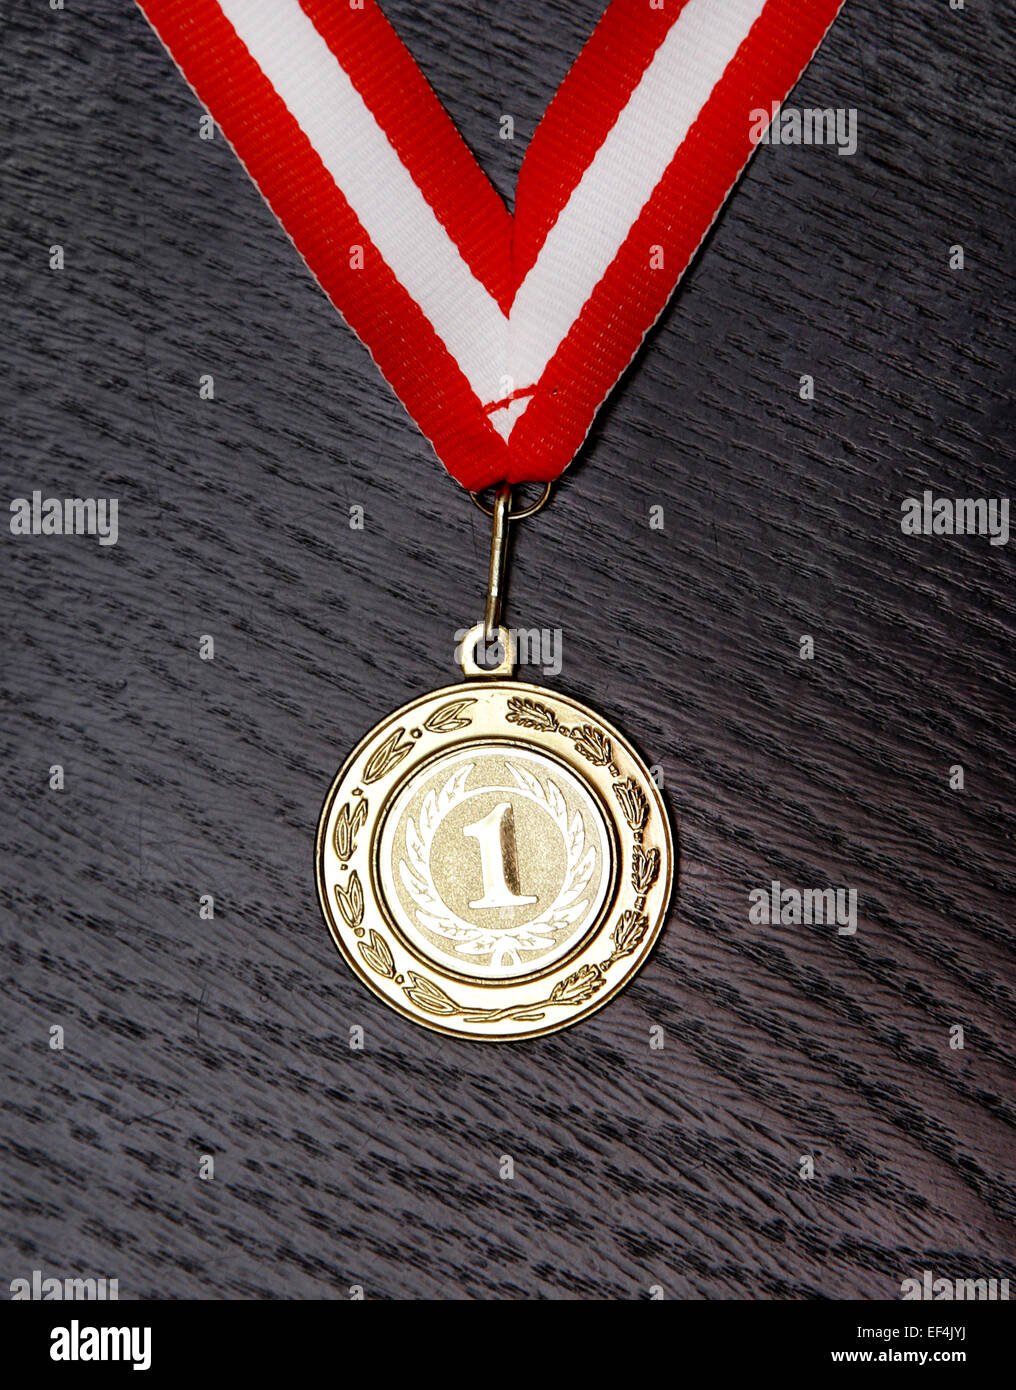 Medaglia d' oro per il primo posto con il rosso e nastro bianco Foto Stock